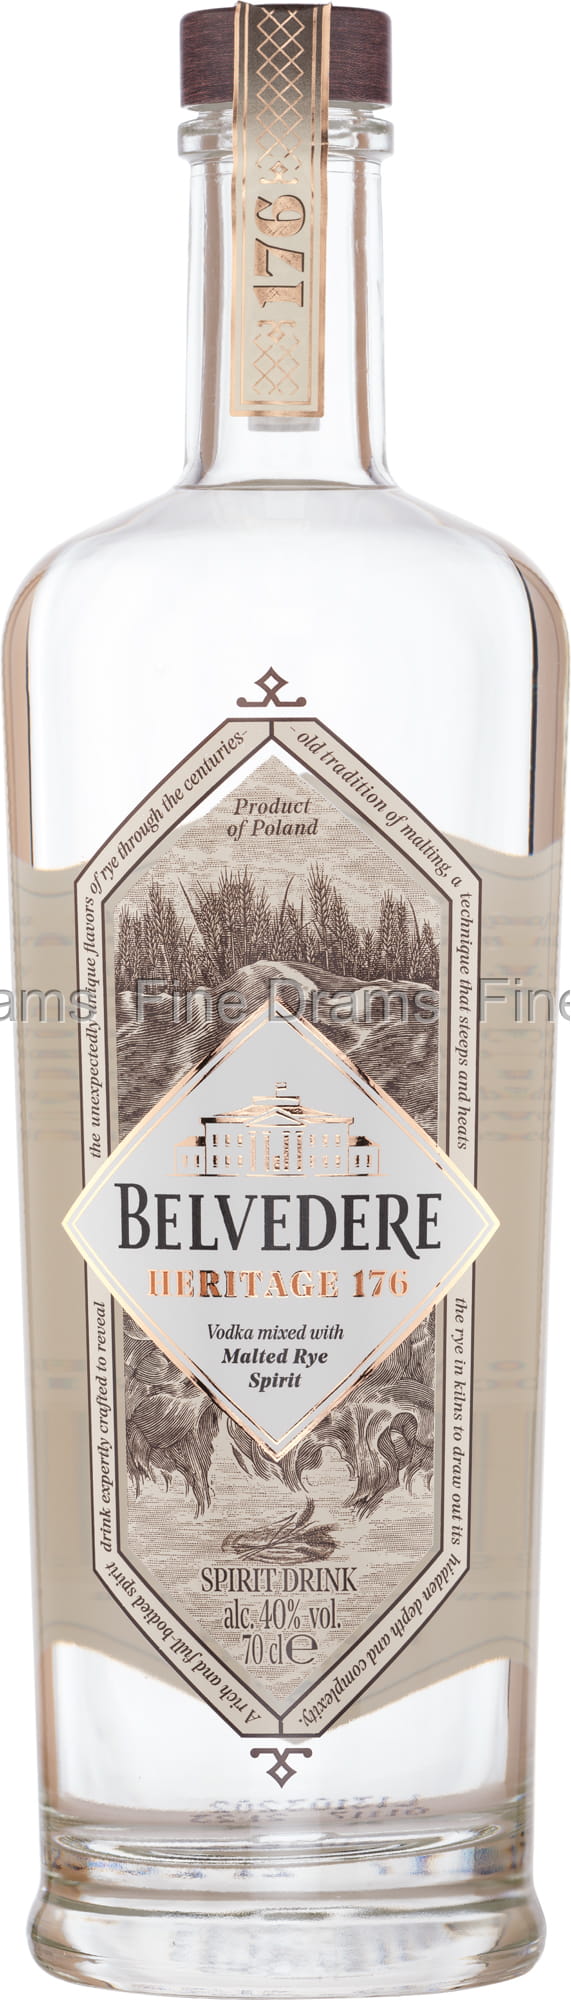 176 Vodka Heritage Belvedere